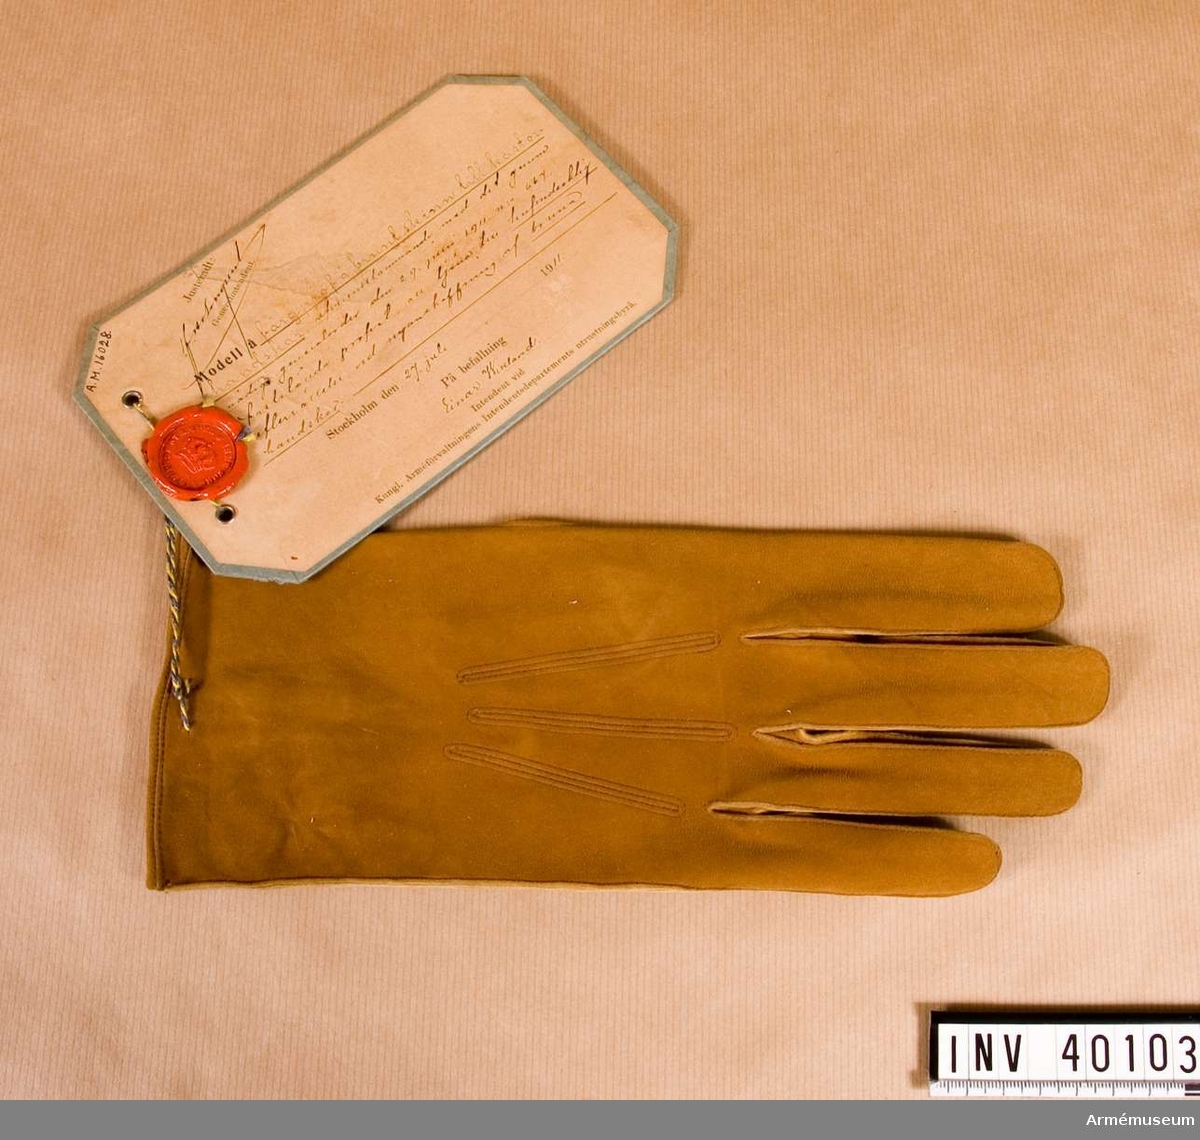 Grupp C I
Färgprov m/1911 på brunt skinn till kastorshandskar att tjäna till huvudsaklig efterrättelse vid nyanskaffningen av bruna handskar. Vänsterhandske.